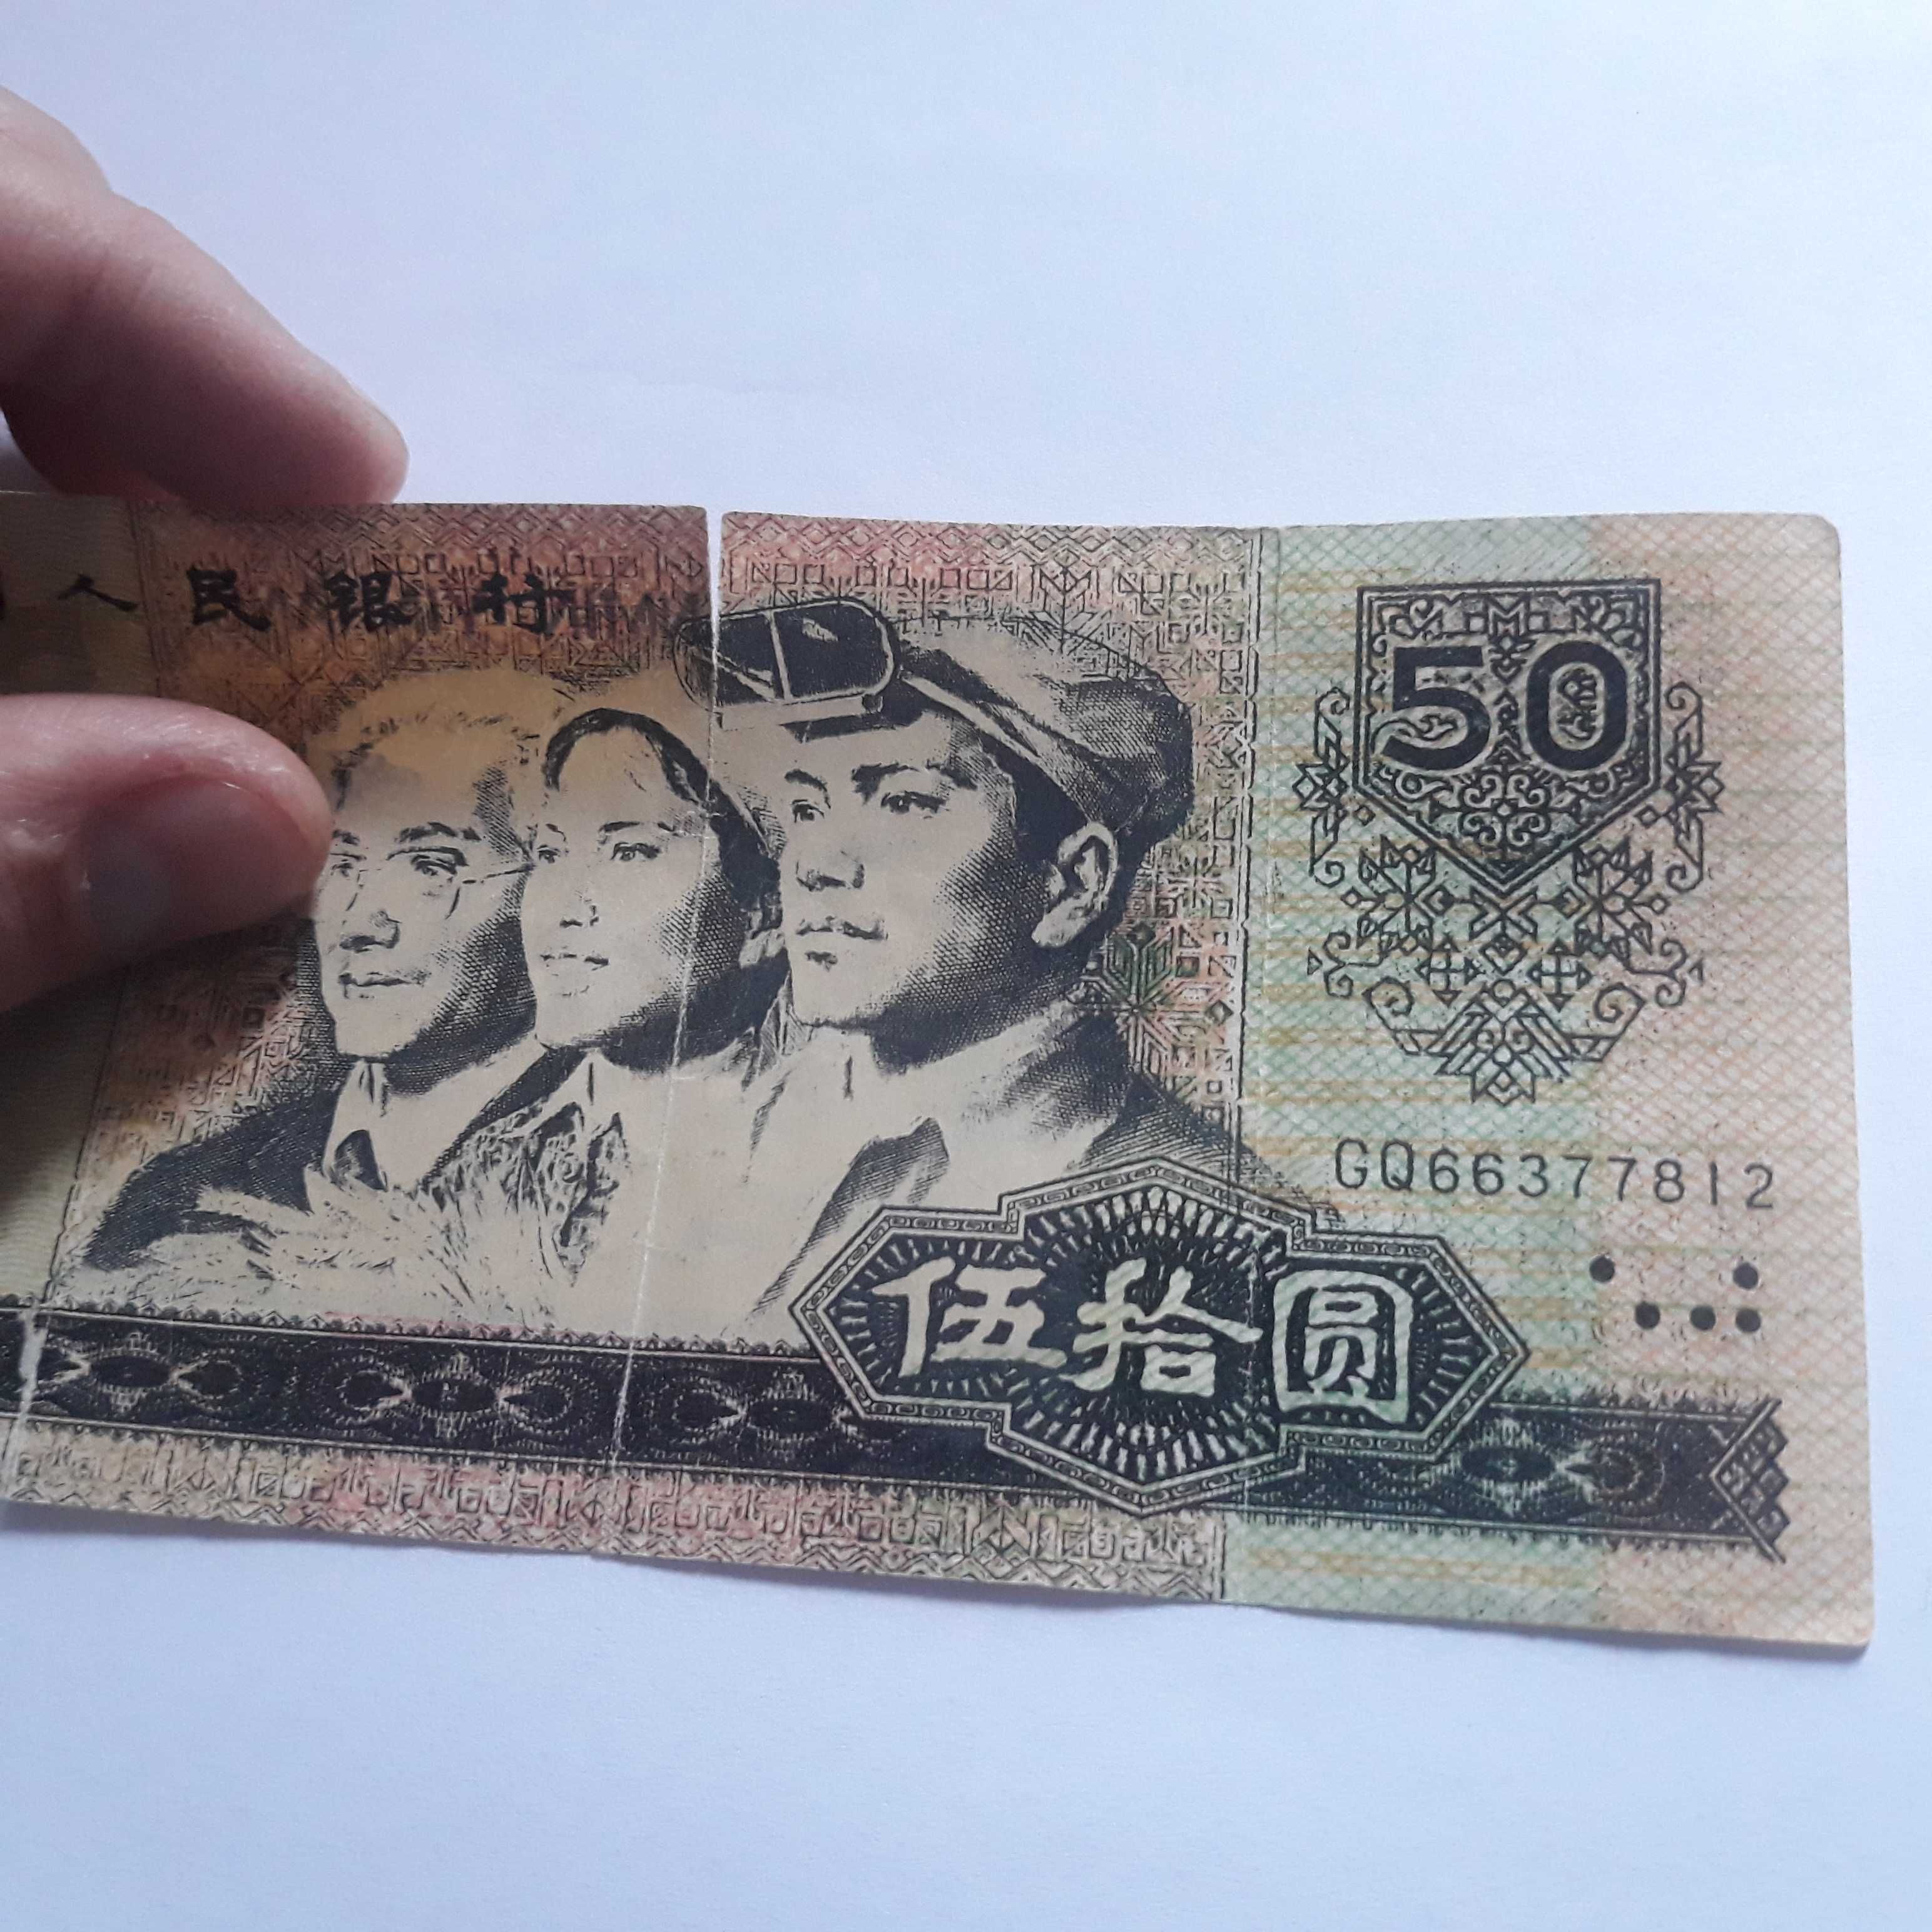 Банкнота Китая  - 50 юаней 1980